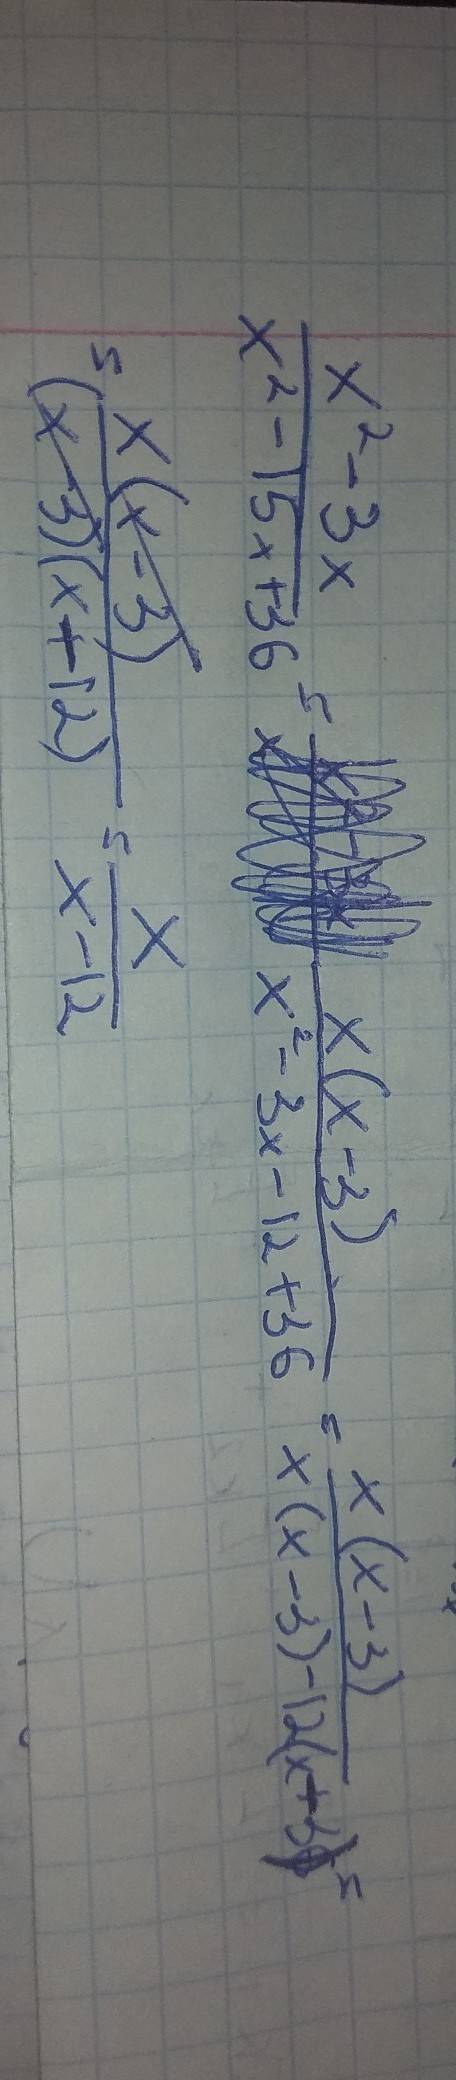 Сократите дробь: а) x^2-3x\x^2-15x+36 ^-знак квадрат например; х в квадрате \-дробный знак